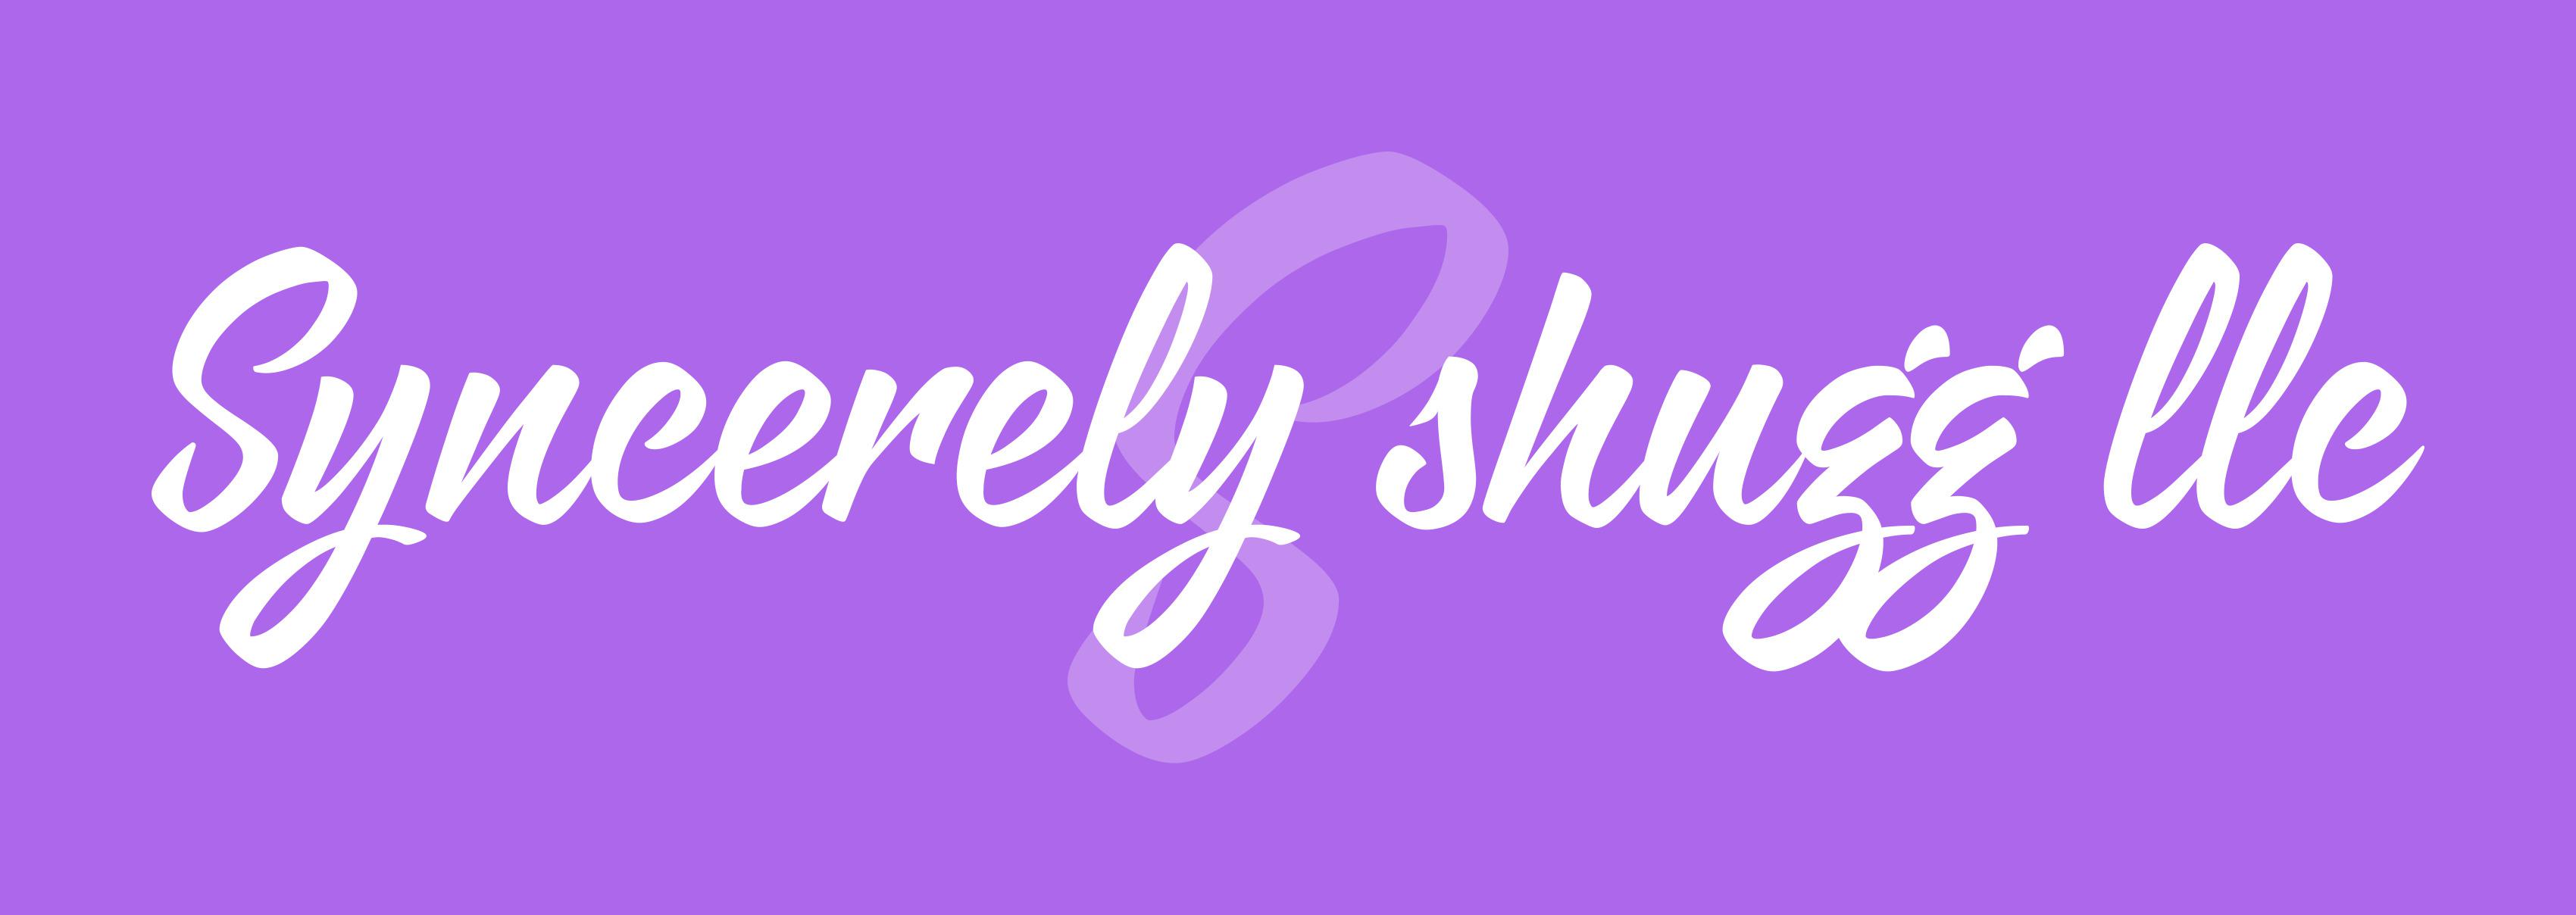 Syncerely Shugg Logo